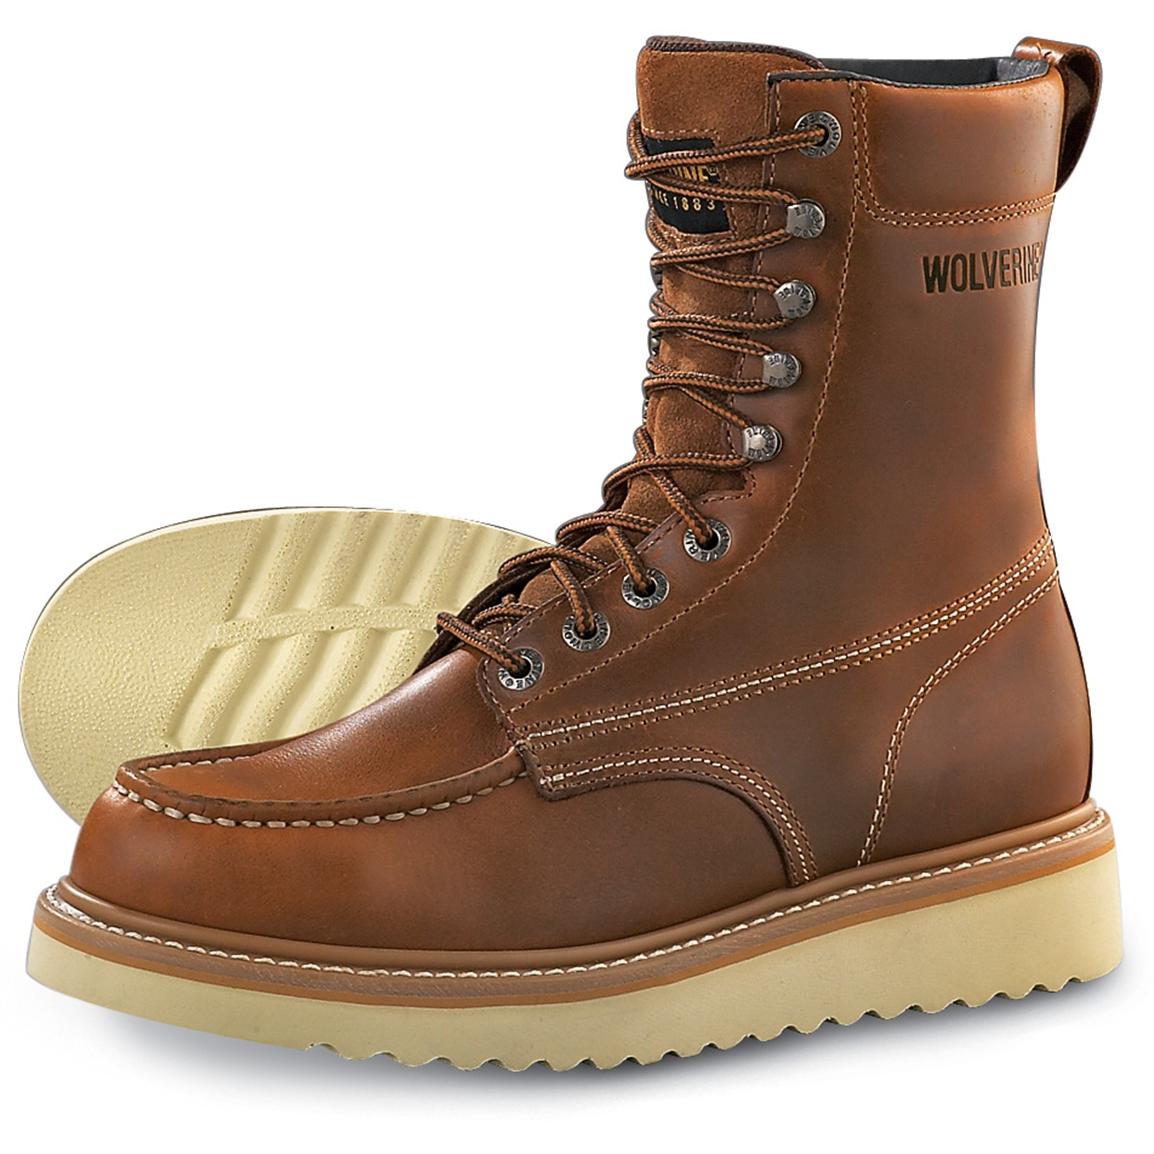 men's wolverine work boots on sale